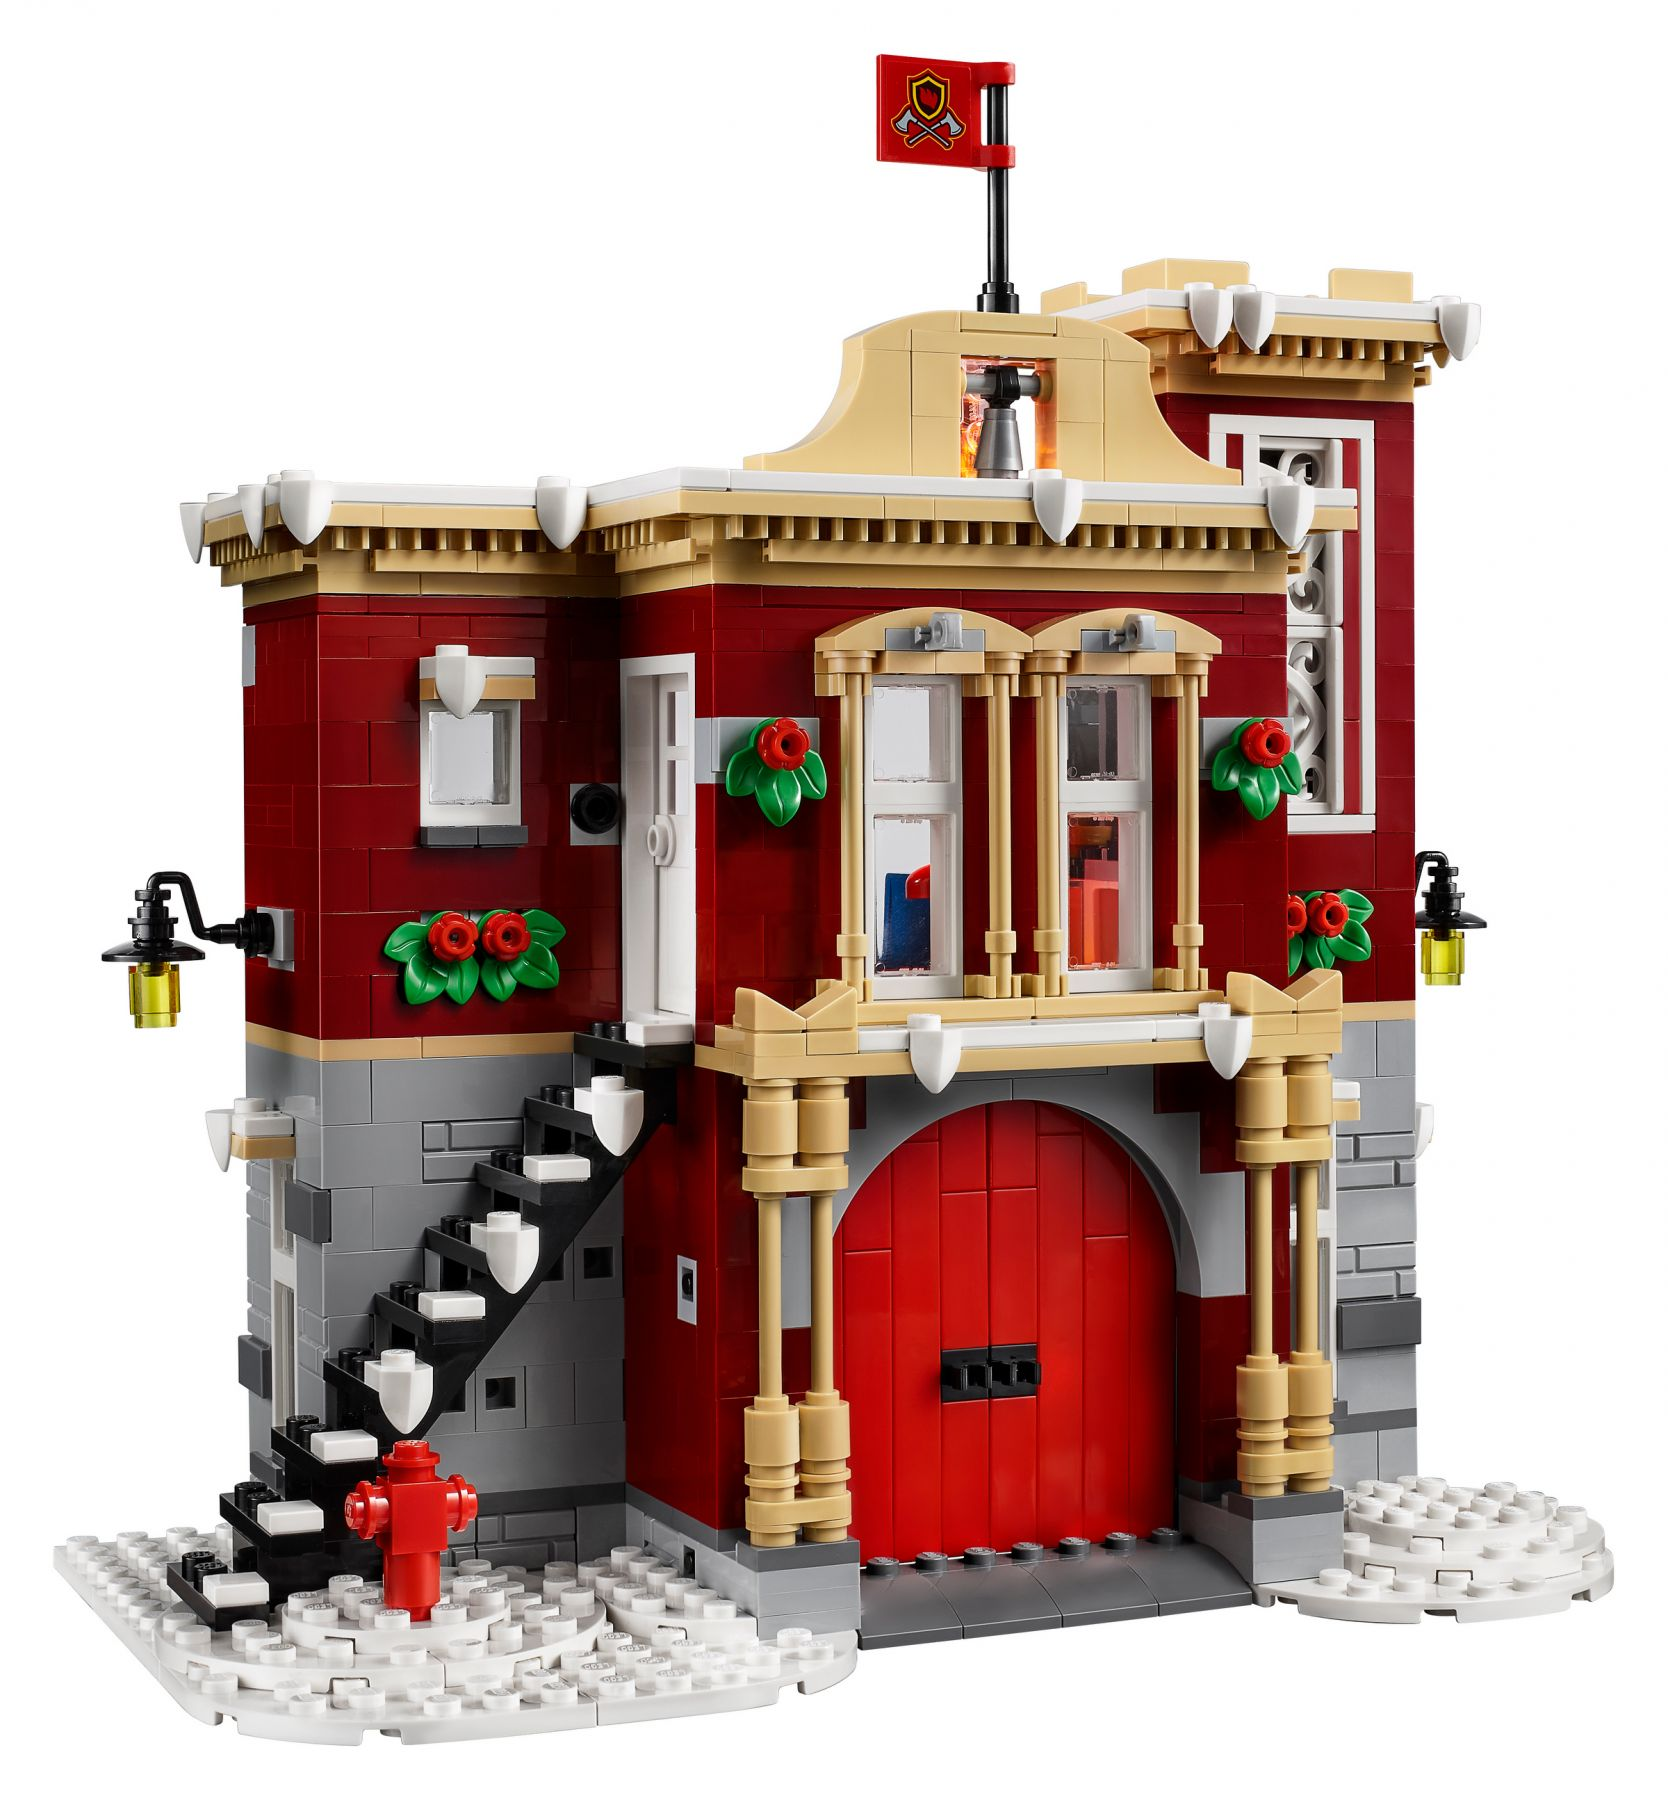 LEGO Creator Expert Feuerwehrstation Bausatz 10263 Winterliche